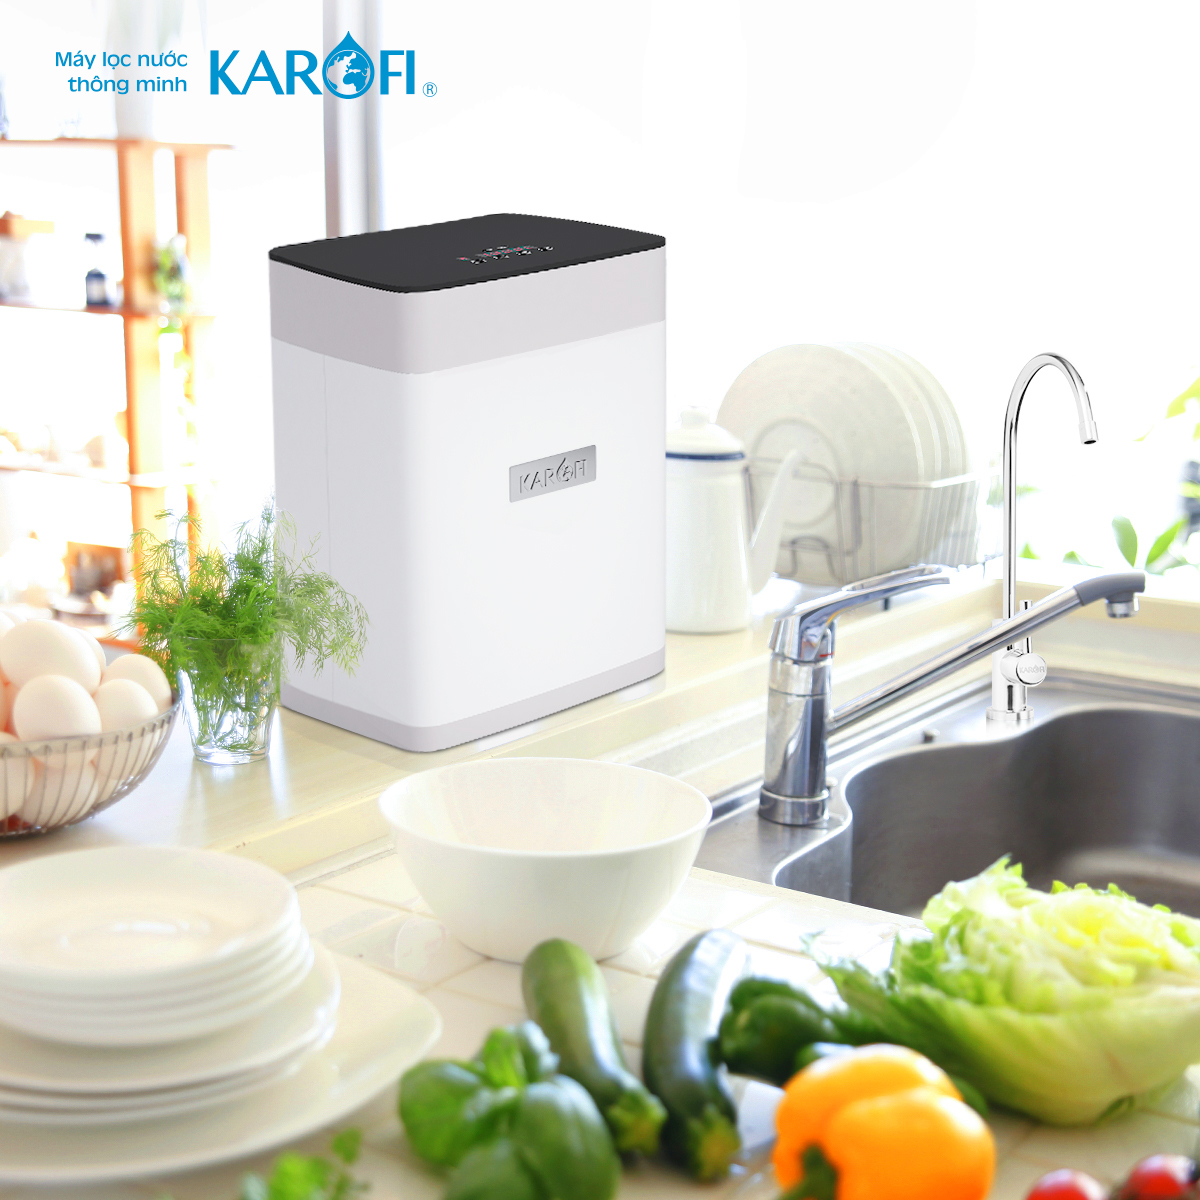 Có nên mua máy lọc nước Karofi Topbox cho gia đình không?